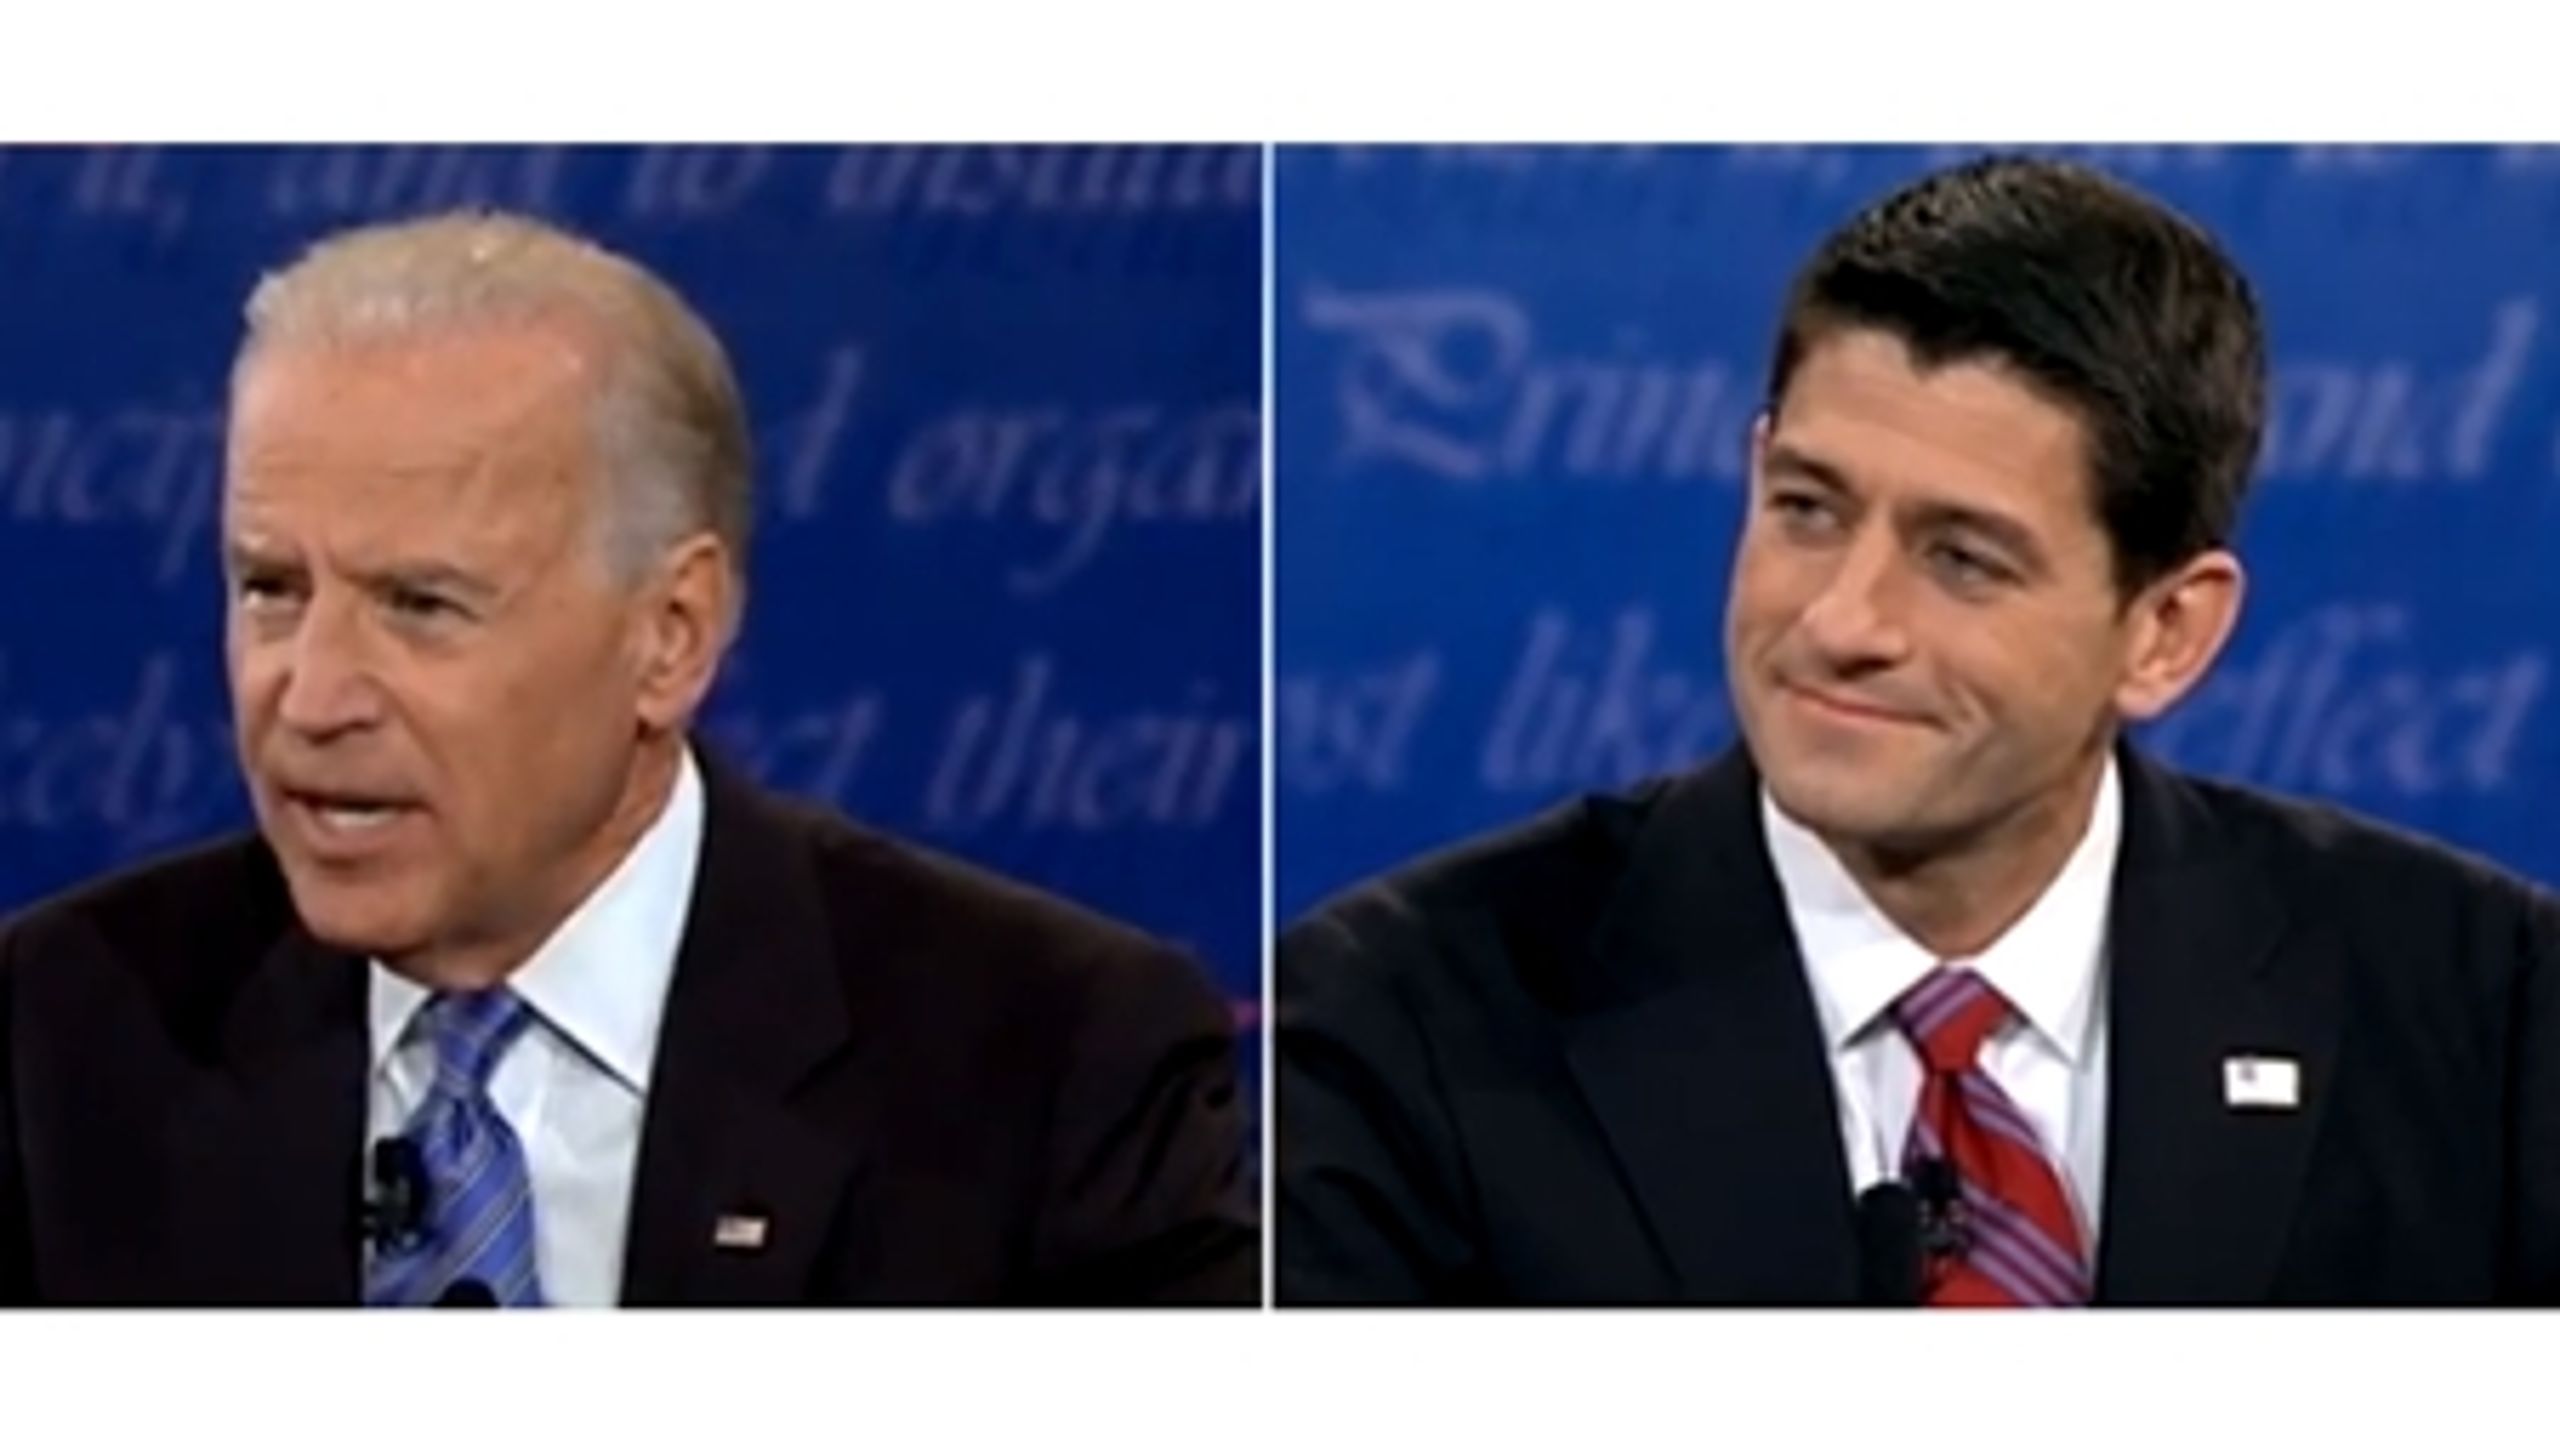 Joe Biden (tv) og Paul Ryan (th.) i en typisk situation fra torsdag aftens vicepræsident-debat. Biden havde den indignerede tone på, mens Ryan leverede fakta roligt. Begge dele virkede til kandidaternes
fordele, så kampen blev uafgjort.